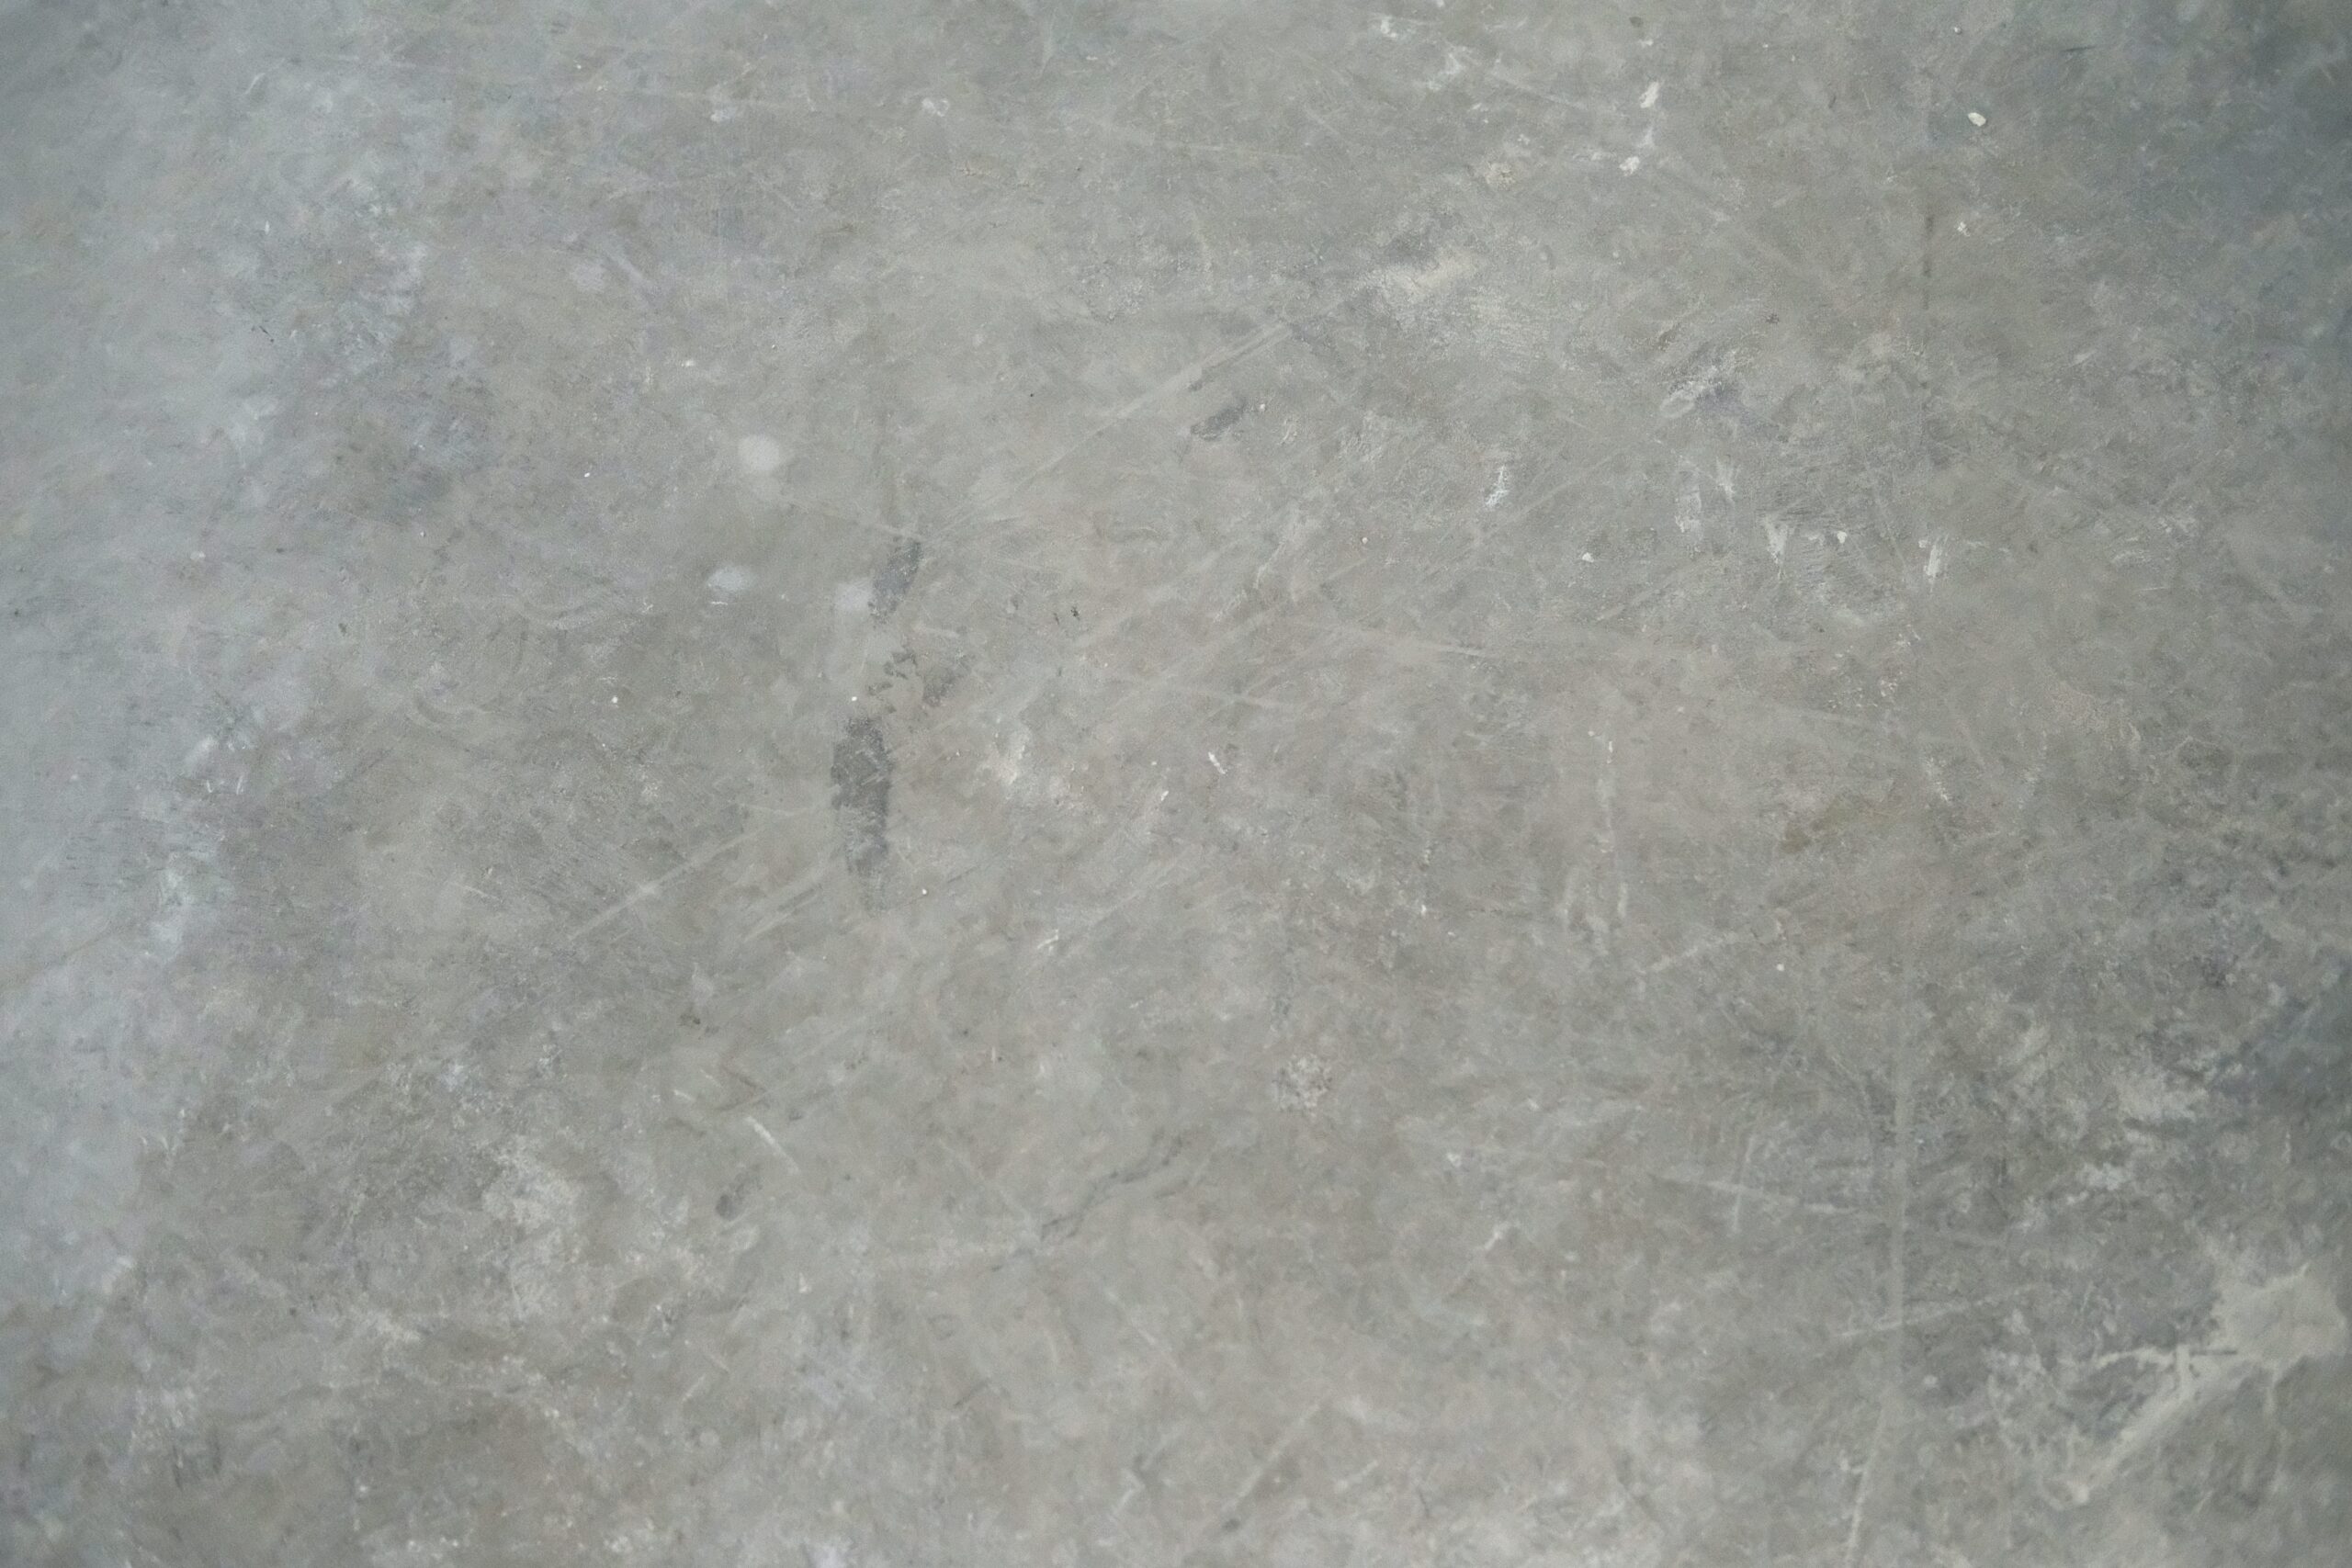 Utilizing concrete flooring is important for creating a brutalist interior design space. Pictured: Concrete flooring.